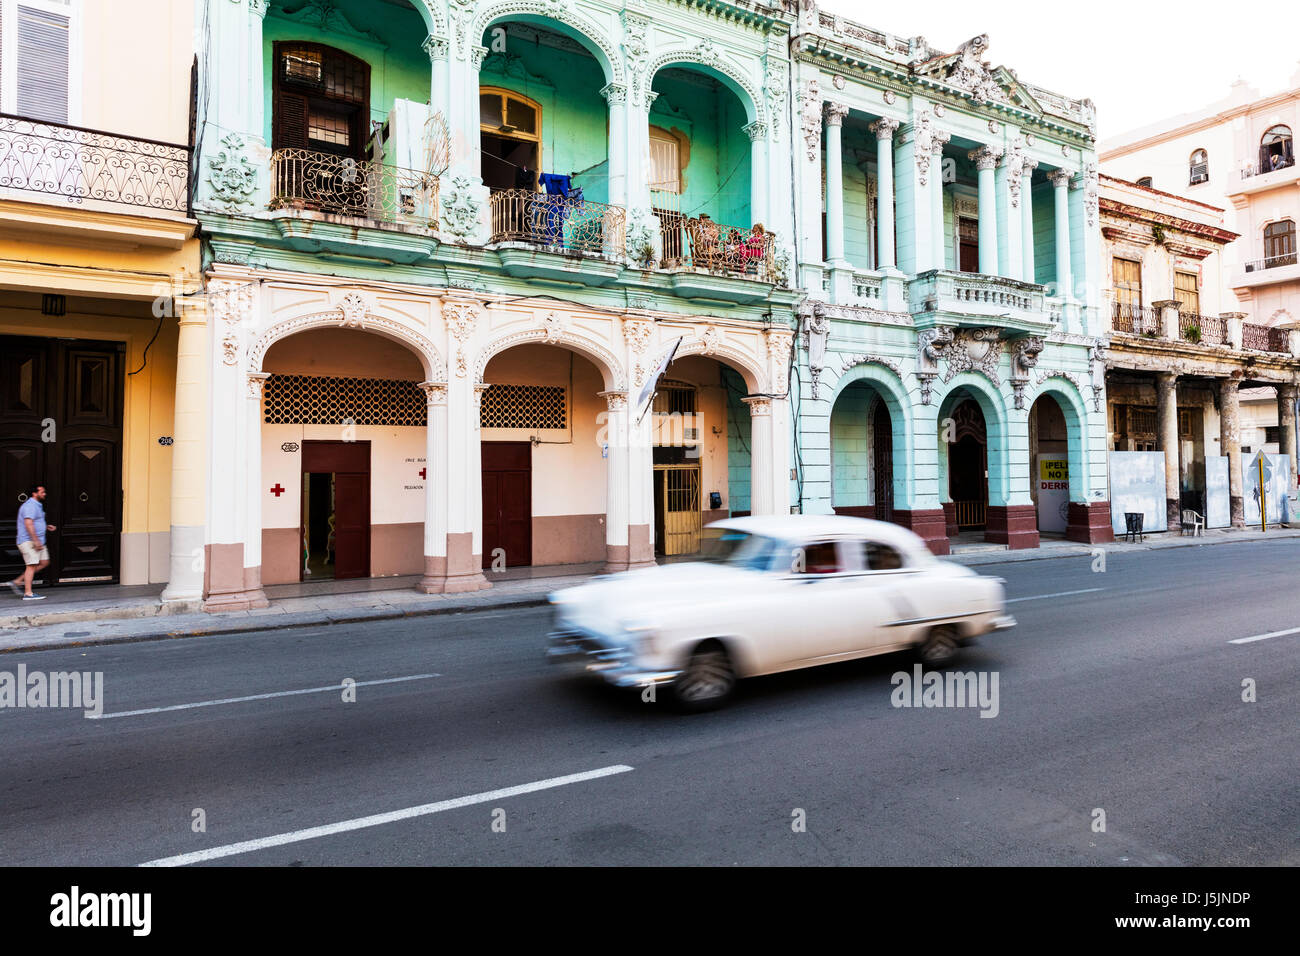 Alten Oldtimer auf der Malecon Havanna Kuba, der Malecon La Habana Cuba, Malacon Kuba, Classic American Auto der Malecon Kuba Straße Straßen von Kuba Stockfoto